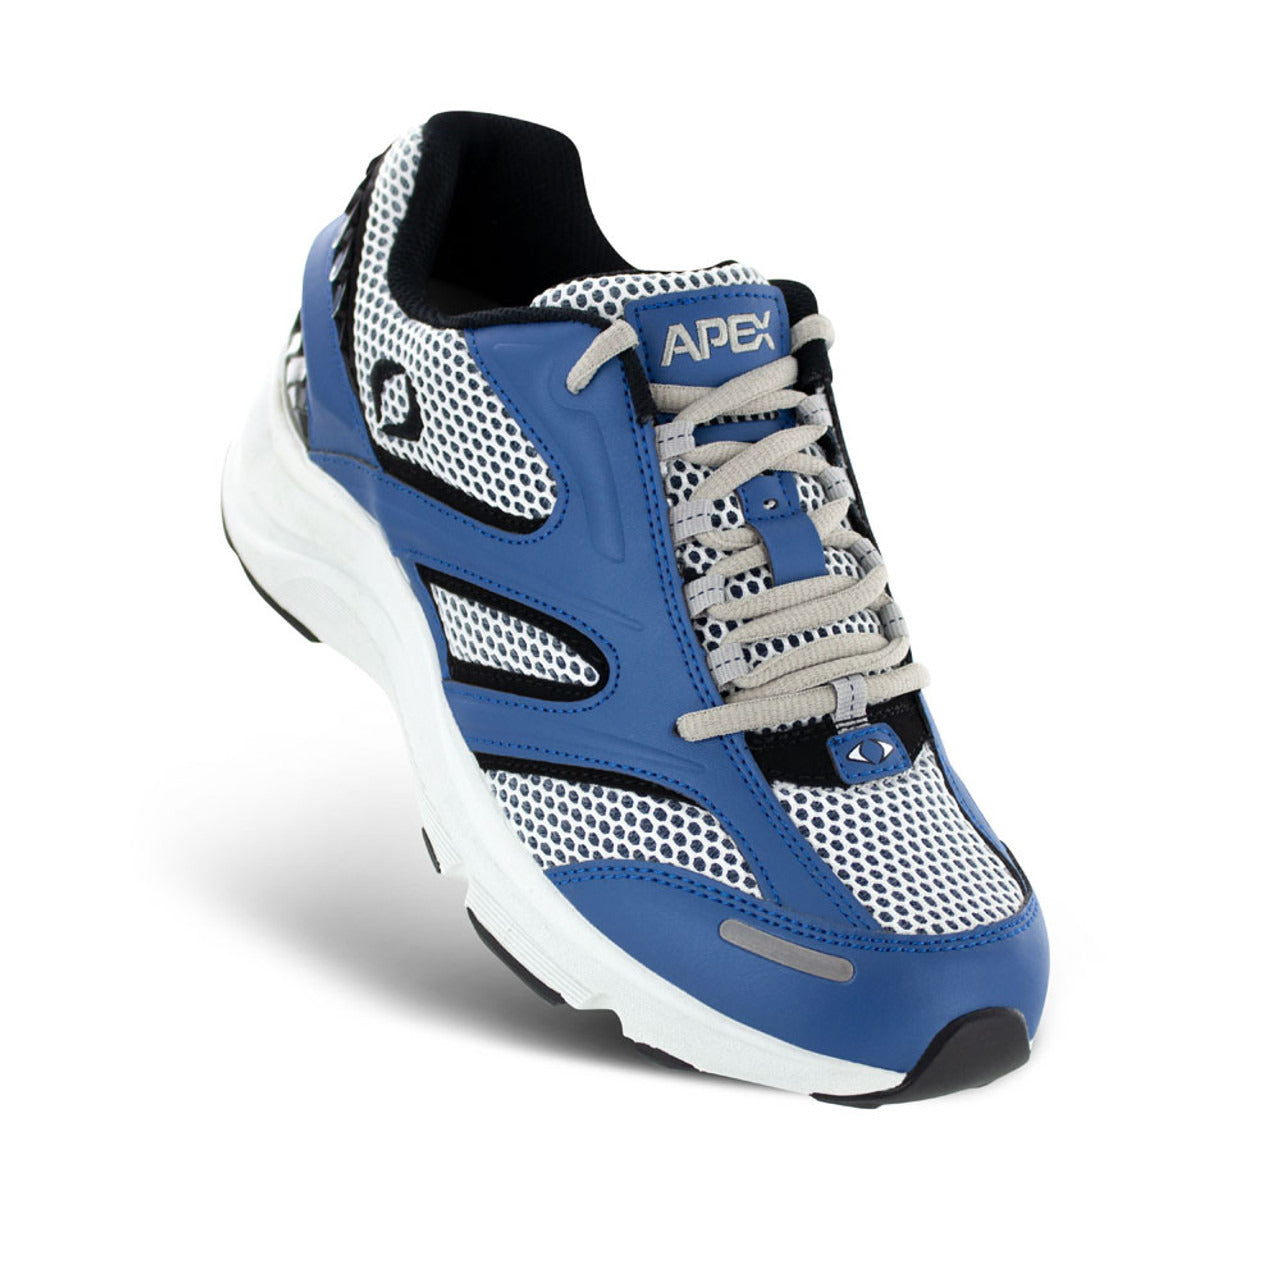 Apexfoot Men's Stealth Runner Active Shoe - V Last - White/Blue - Medium (D)